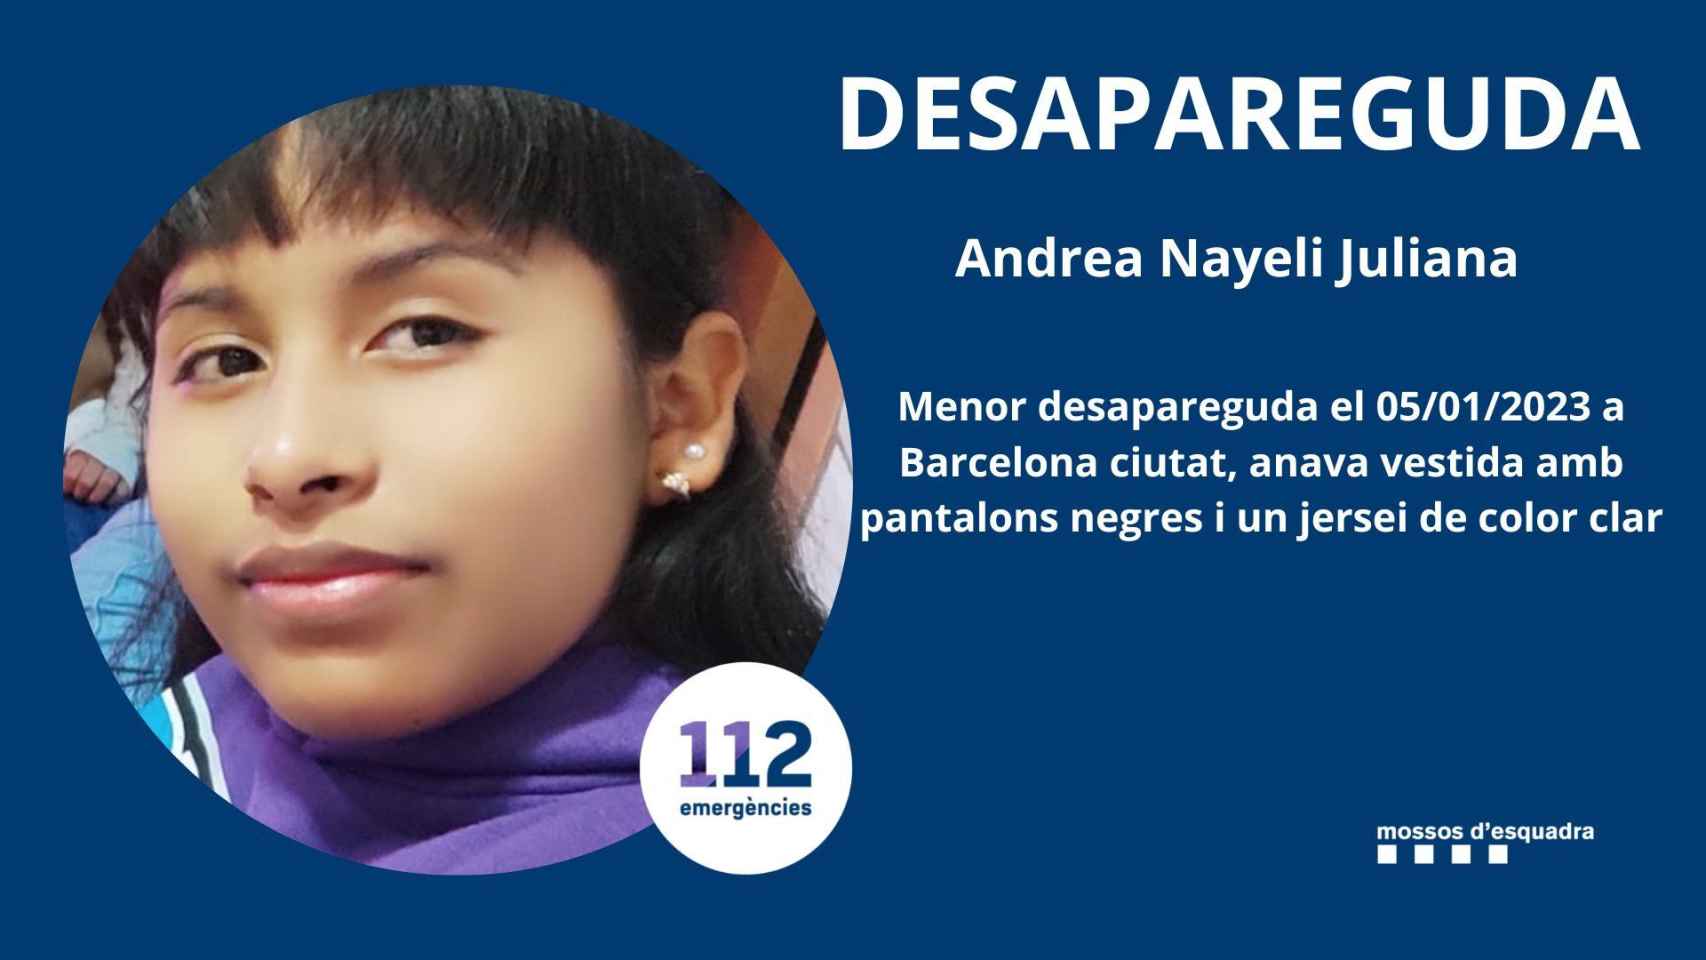 Andrea, la menor desaparecida en Barcelona / MOSSOS D'ESQUADRA